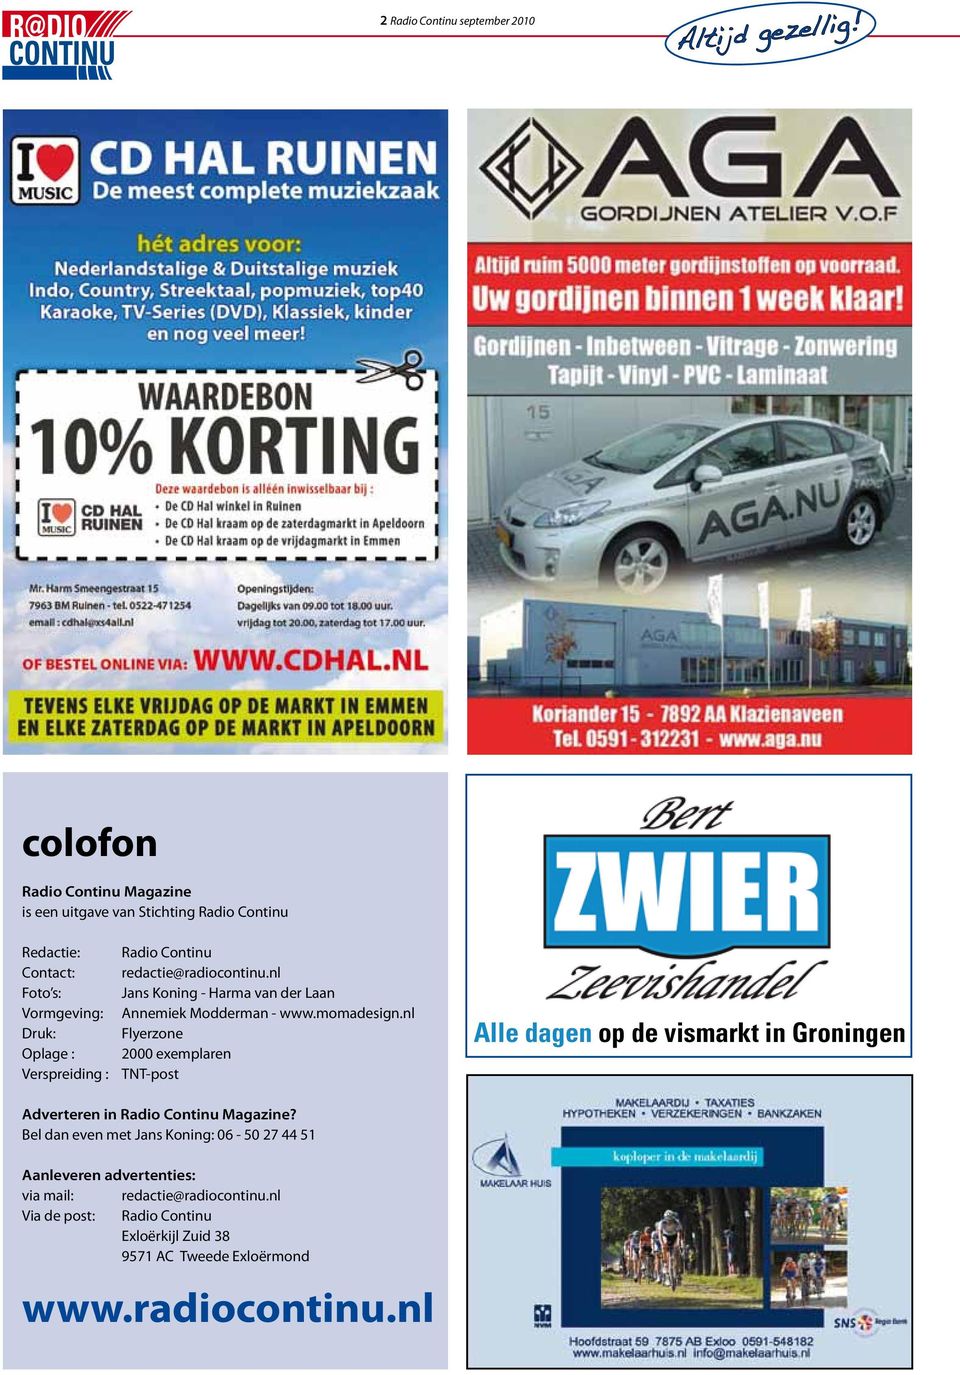 nl Flyerzone 2000 exemplaren TNT-post Alle dagen op de vismarkt in Groningen Adverteren in Radio Continu Magazine?